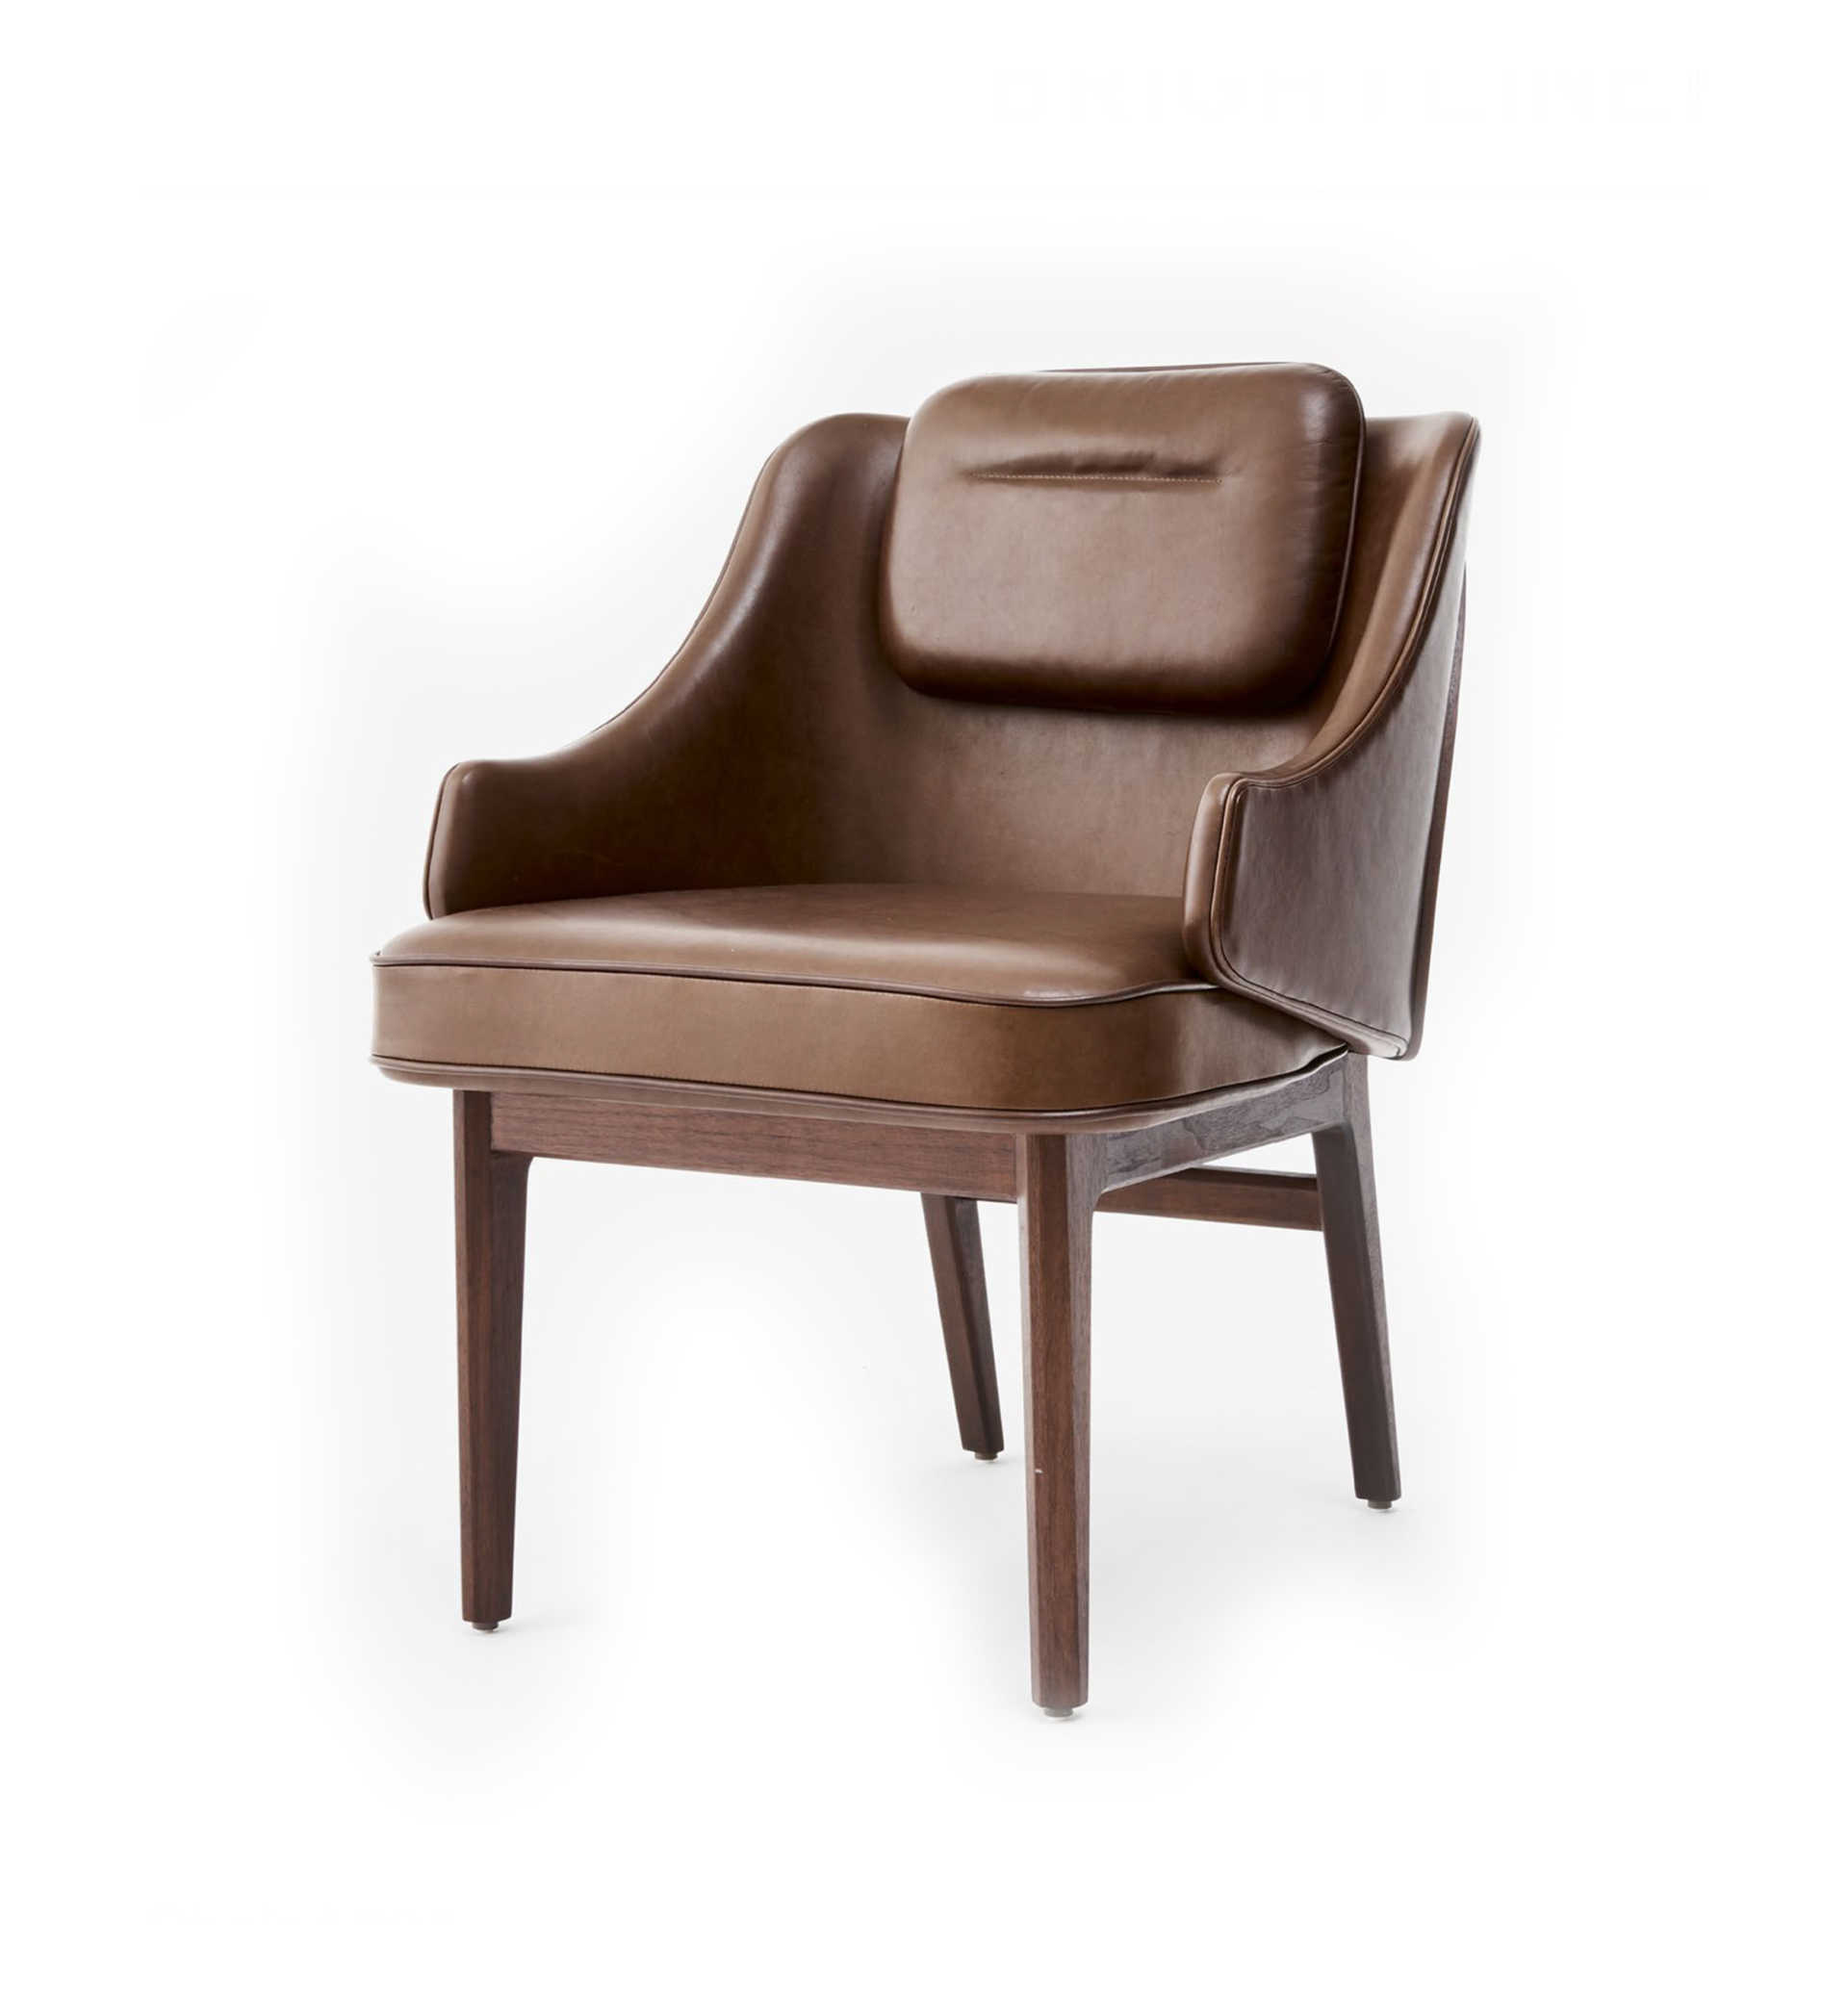 Sloane Arm Chair